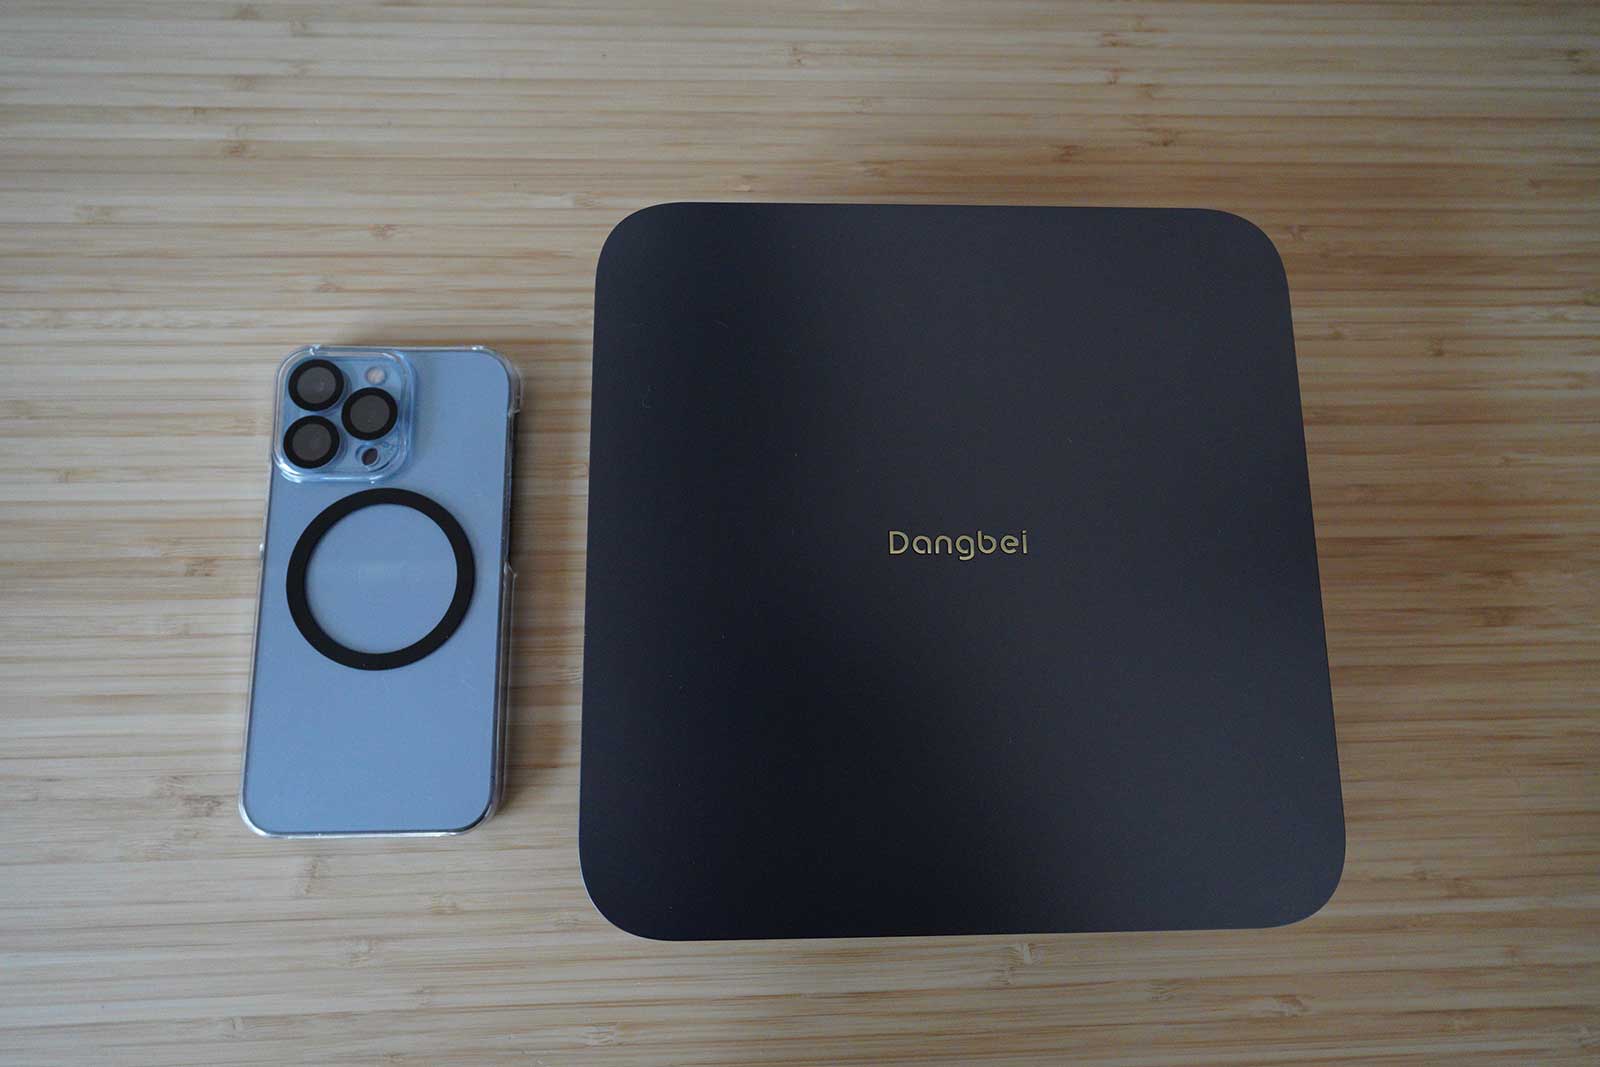 Dangbei Atom iPhoneと大きさ比較